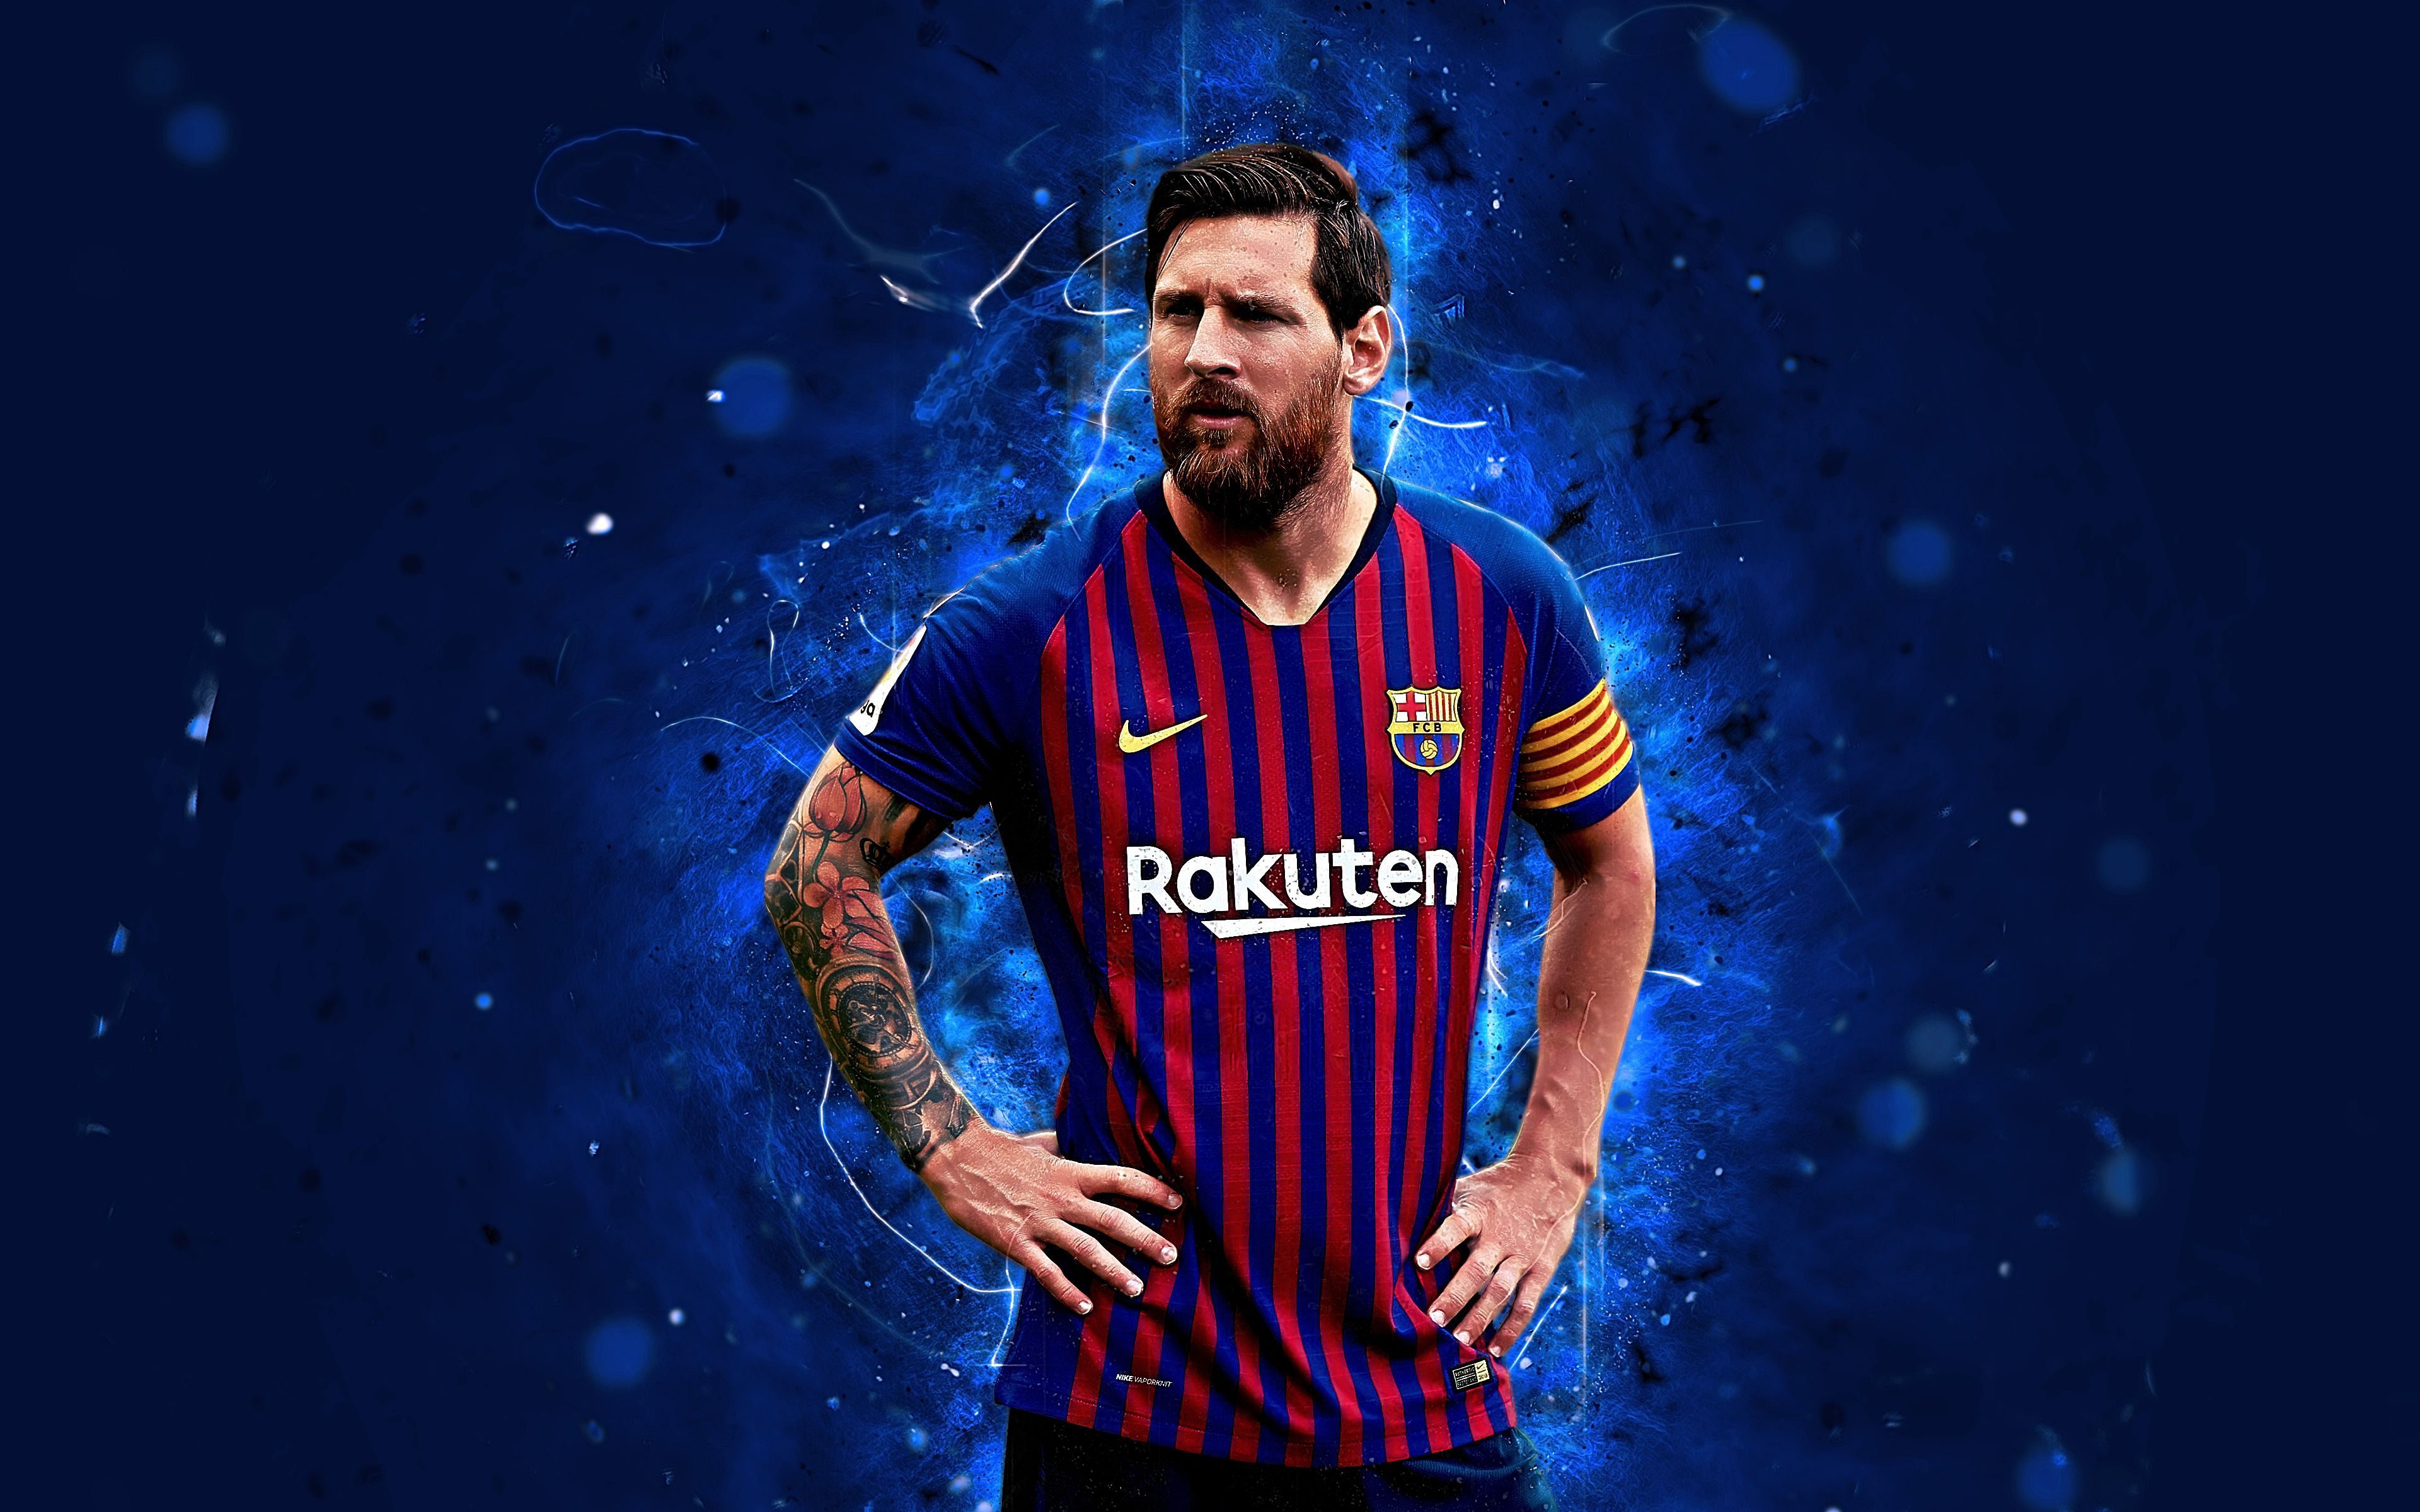 Hình nền Messi 4K: Khám phá vẻ đẹp rực rỡ của siêu sao bóng đá Lionel Messi với hình nền 4K đầy sắc màu. Bạn sẽ bị mê hoặc bởi chi tiết chân thực và sắc nét của hình ảnh, khiến bạn cảm thấy như rằng Messi sẵn sàng tấn công từ màn hình điện thoại của bạn trực tiếp vào sân bóng.